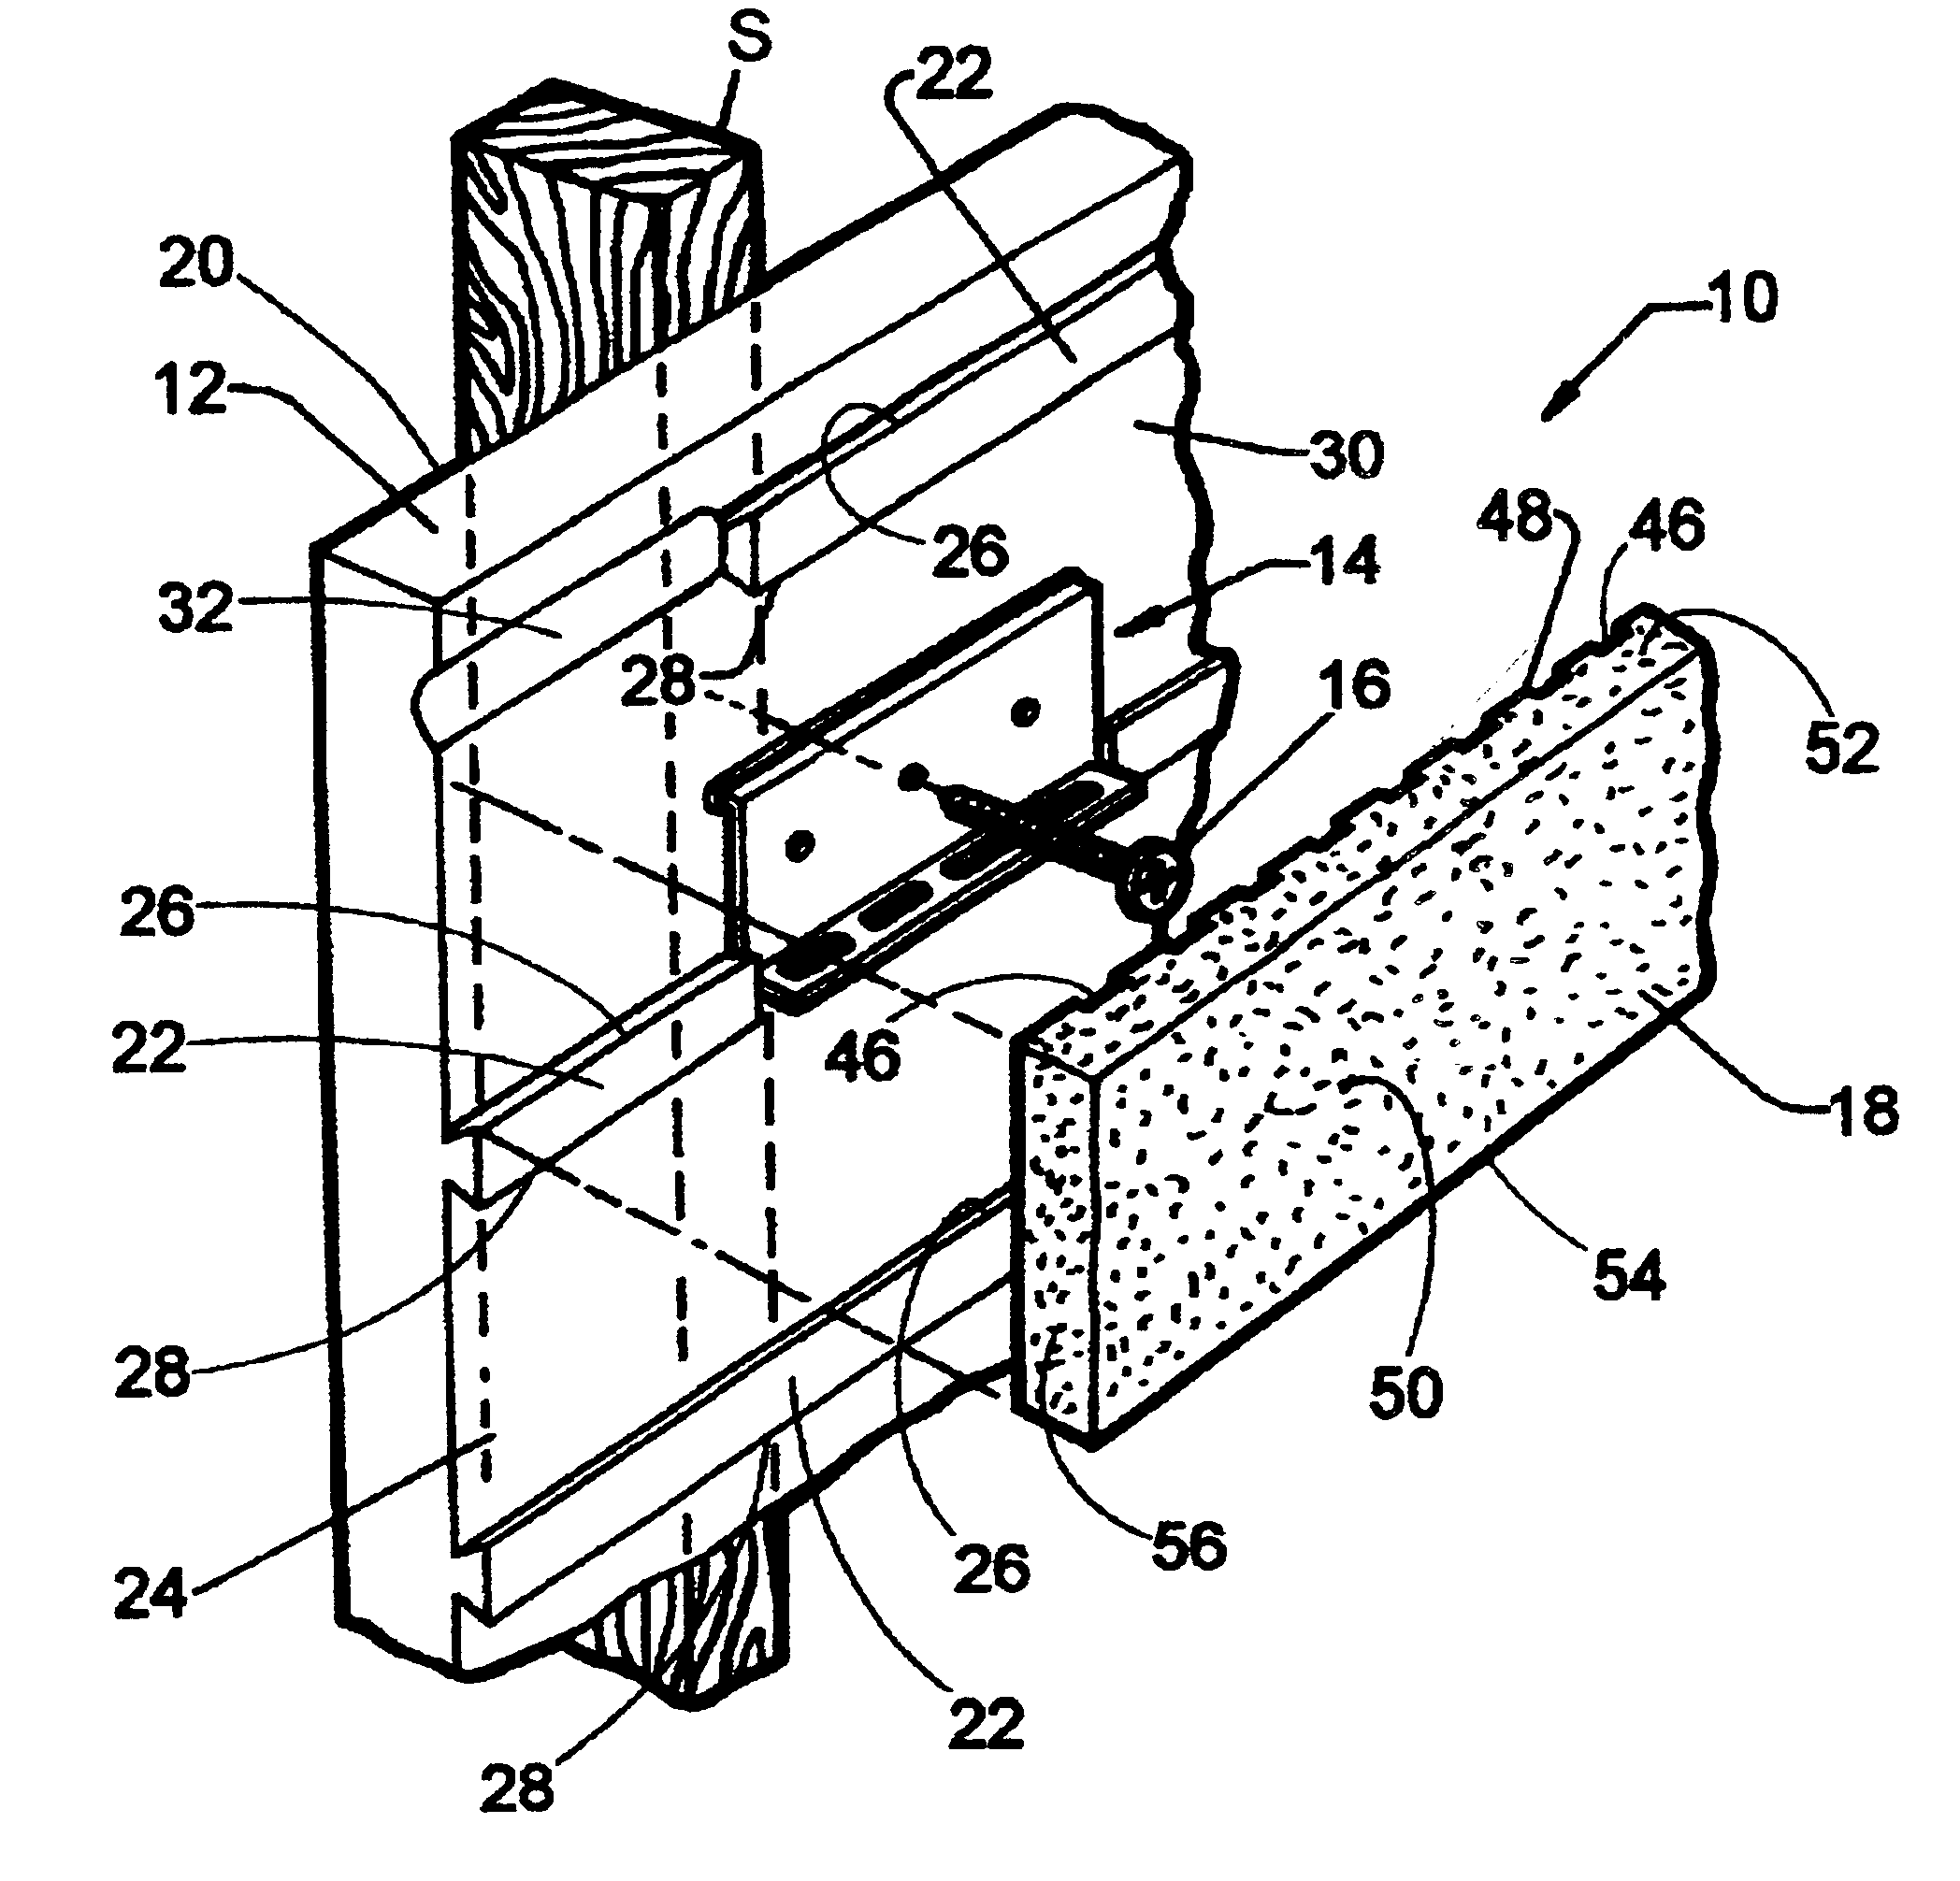 Method and apparatus for making thin brick wall facing